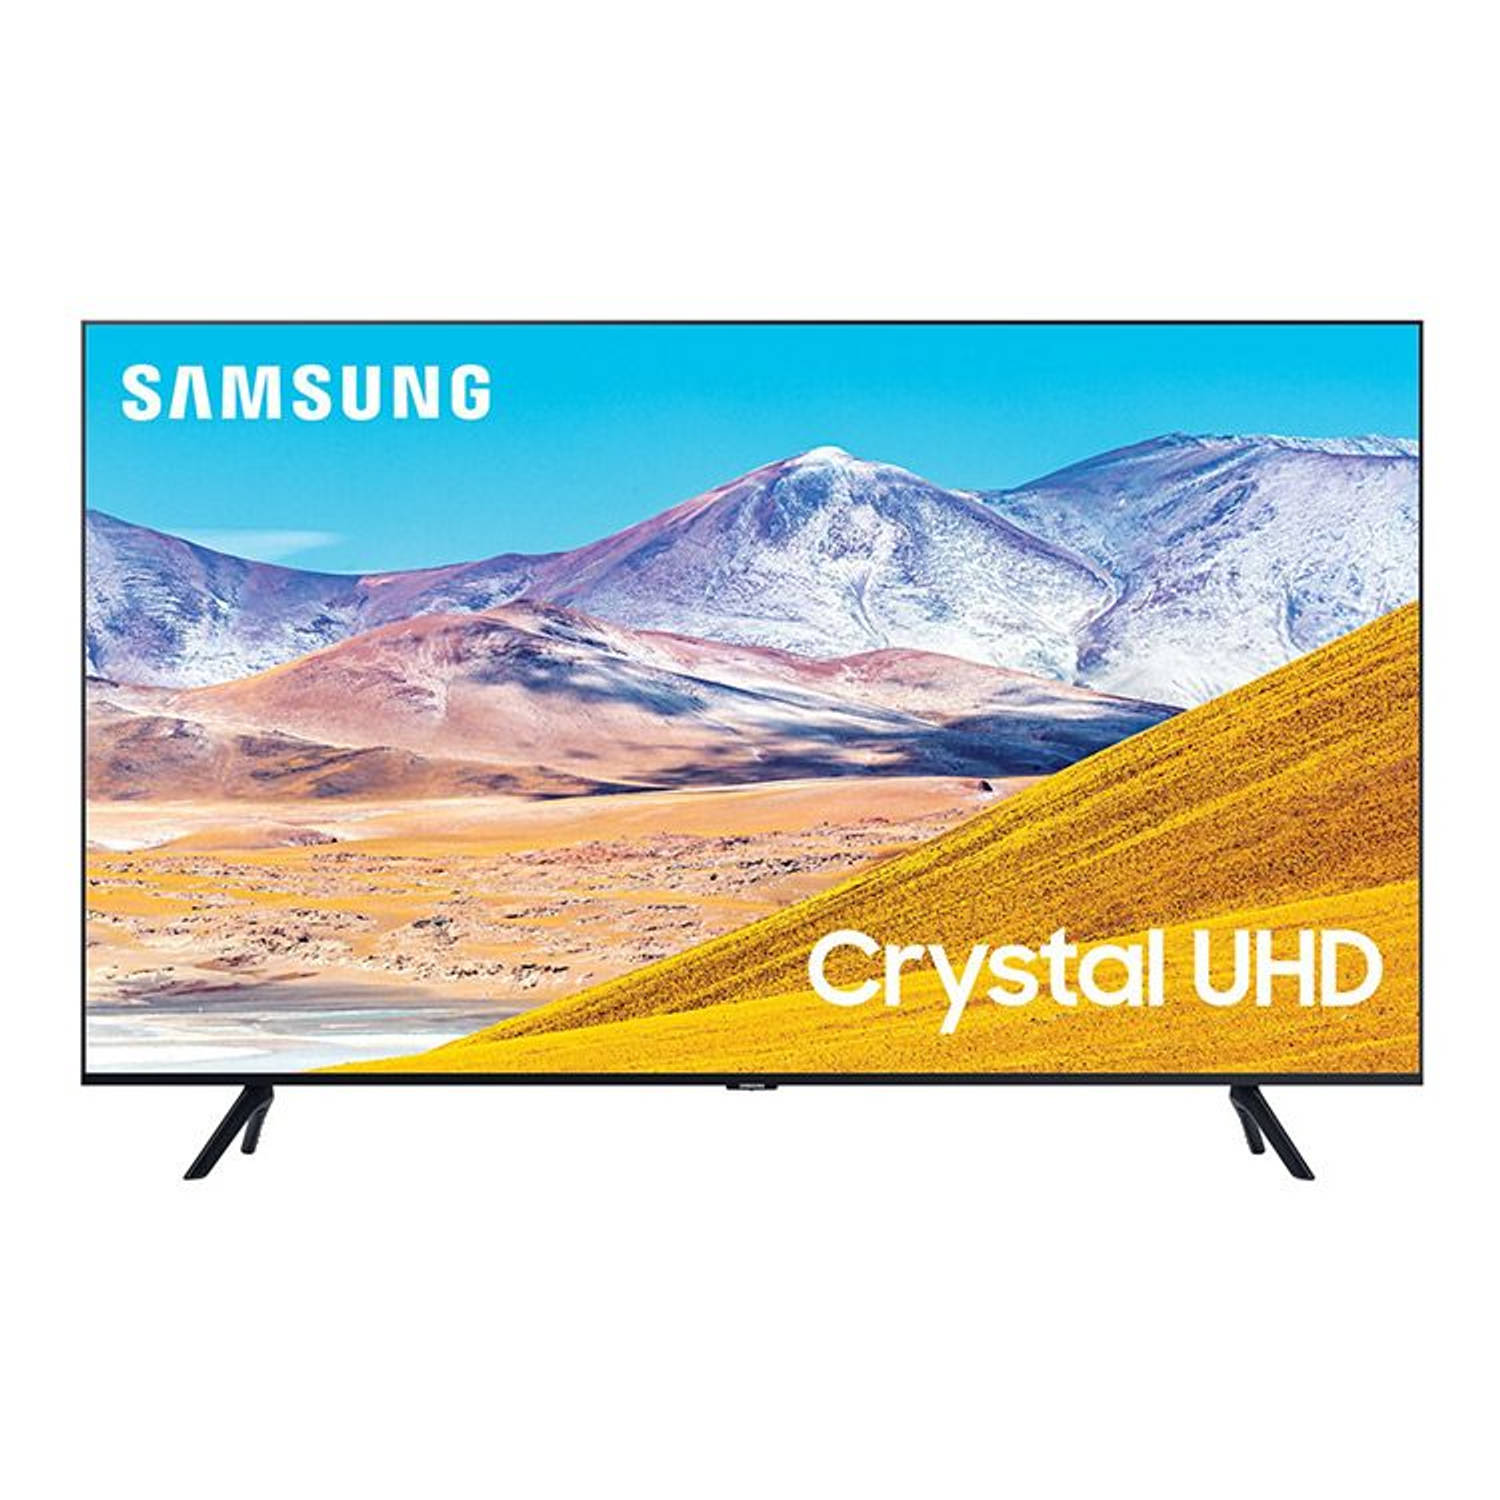 Samsung UE50TU8000 4K HDR LED Smart TV  50  inch  Blokker